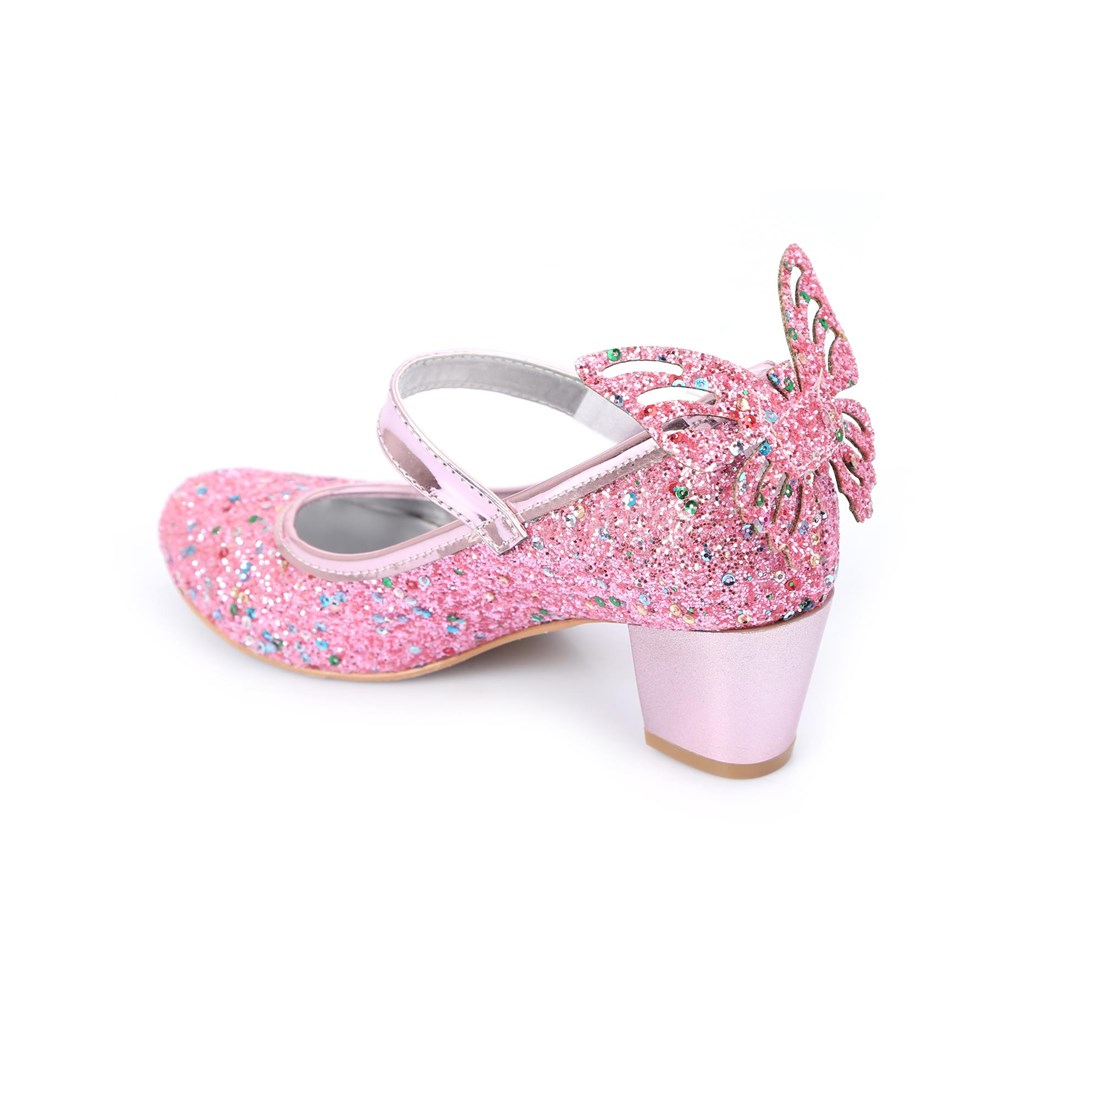 Pembe Karışık Pullu Kelebekli Topuklu Ayakkabı - Kız Çocuk Abiye Ayakkabı -  Kız Çocuk Gösteri Ayakkabısı